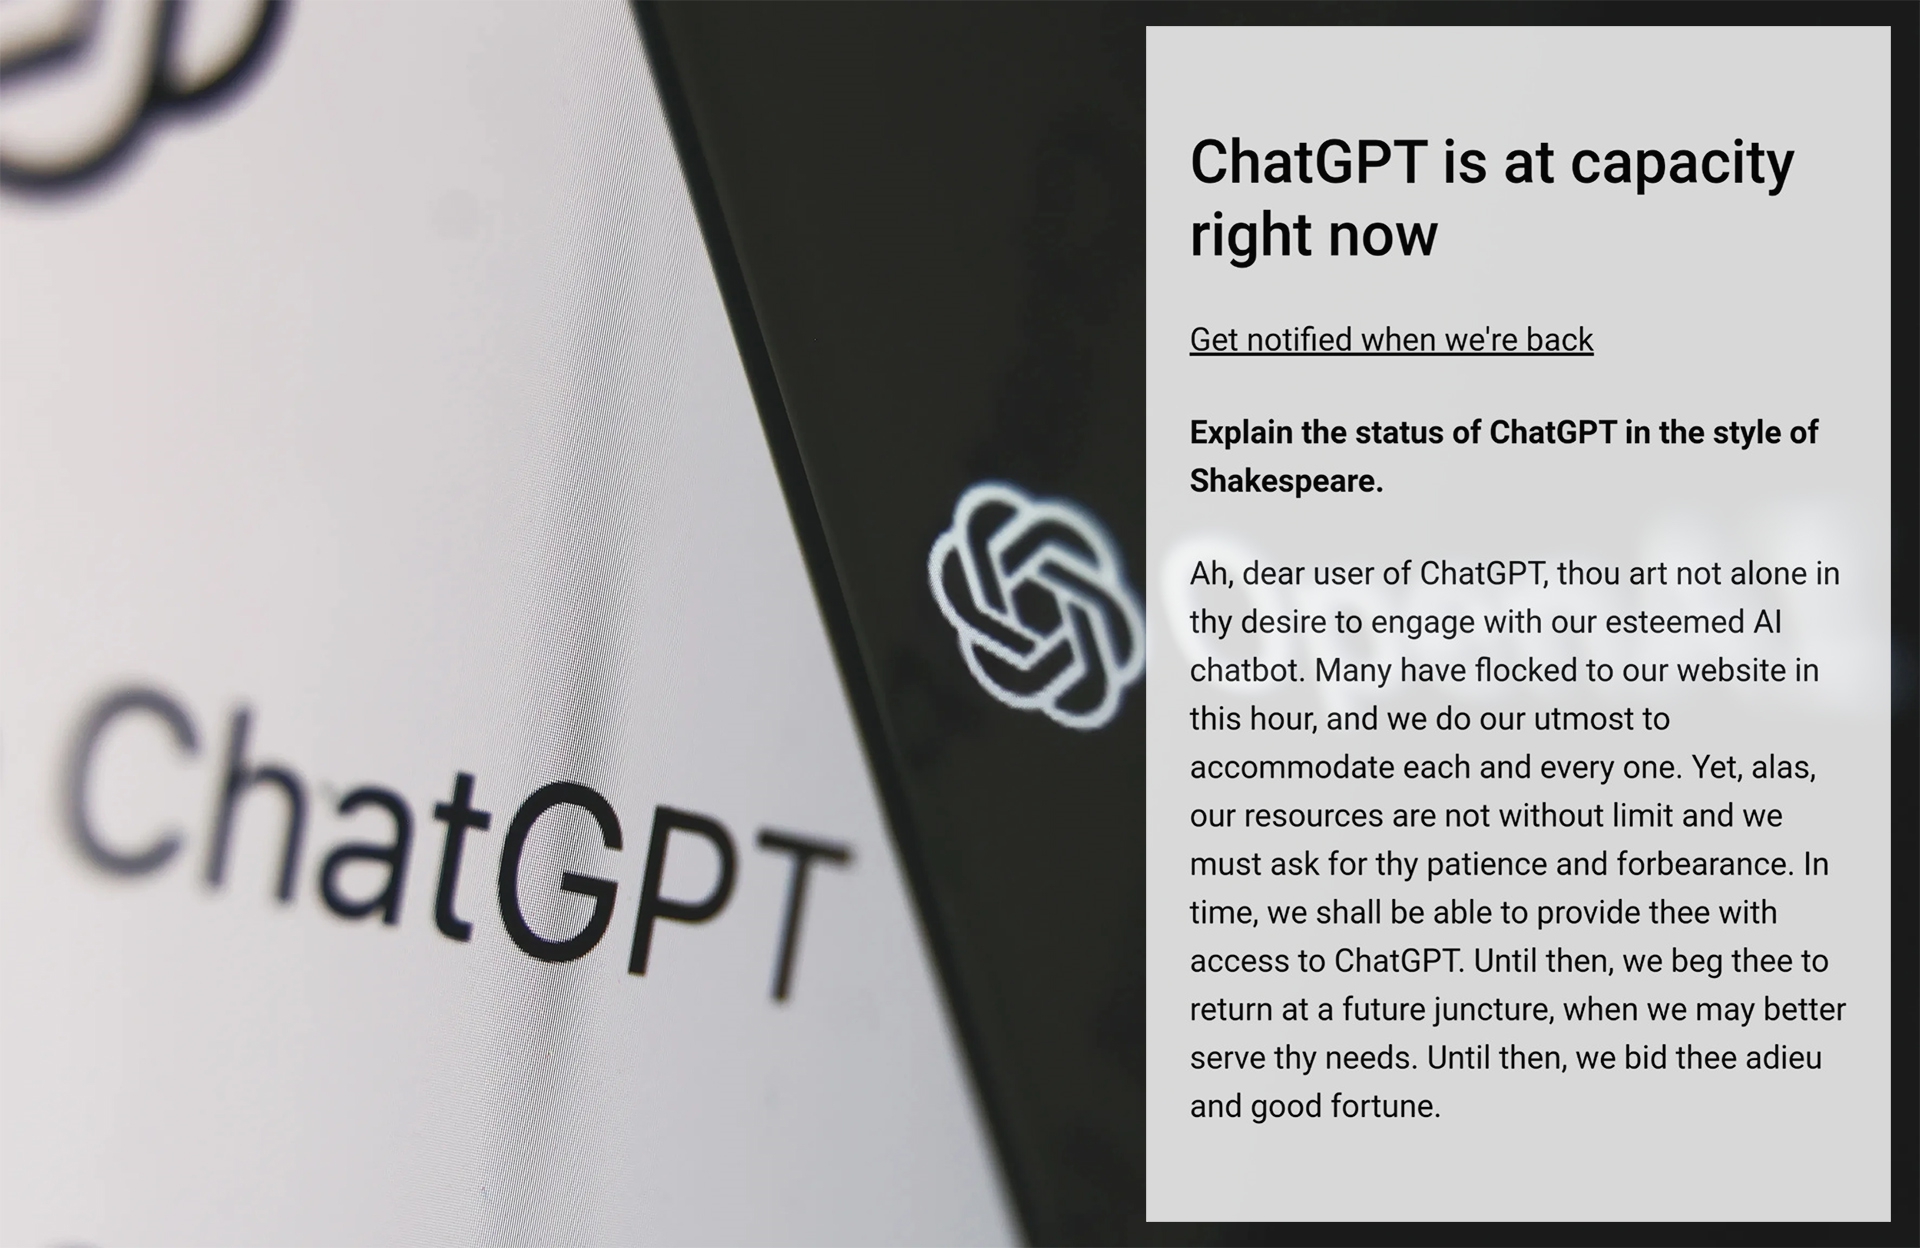 Lỗi &quot;ChatGPT is at capacity right now&quot; xảy ra khi hệ thống của công cụ bị quá tải và không thể tiếp nhận, xử lý thêm thông tin mà người dùng nhập vào. Ảnh: @AFP.